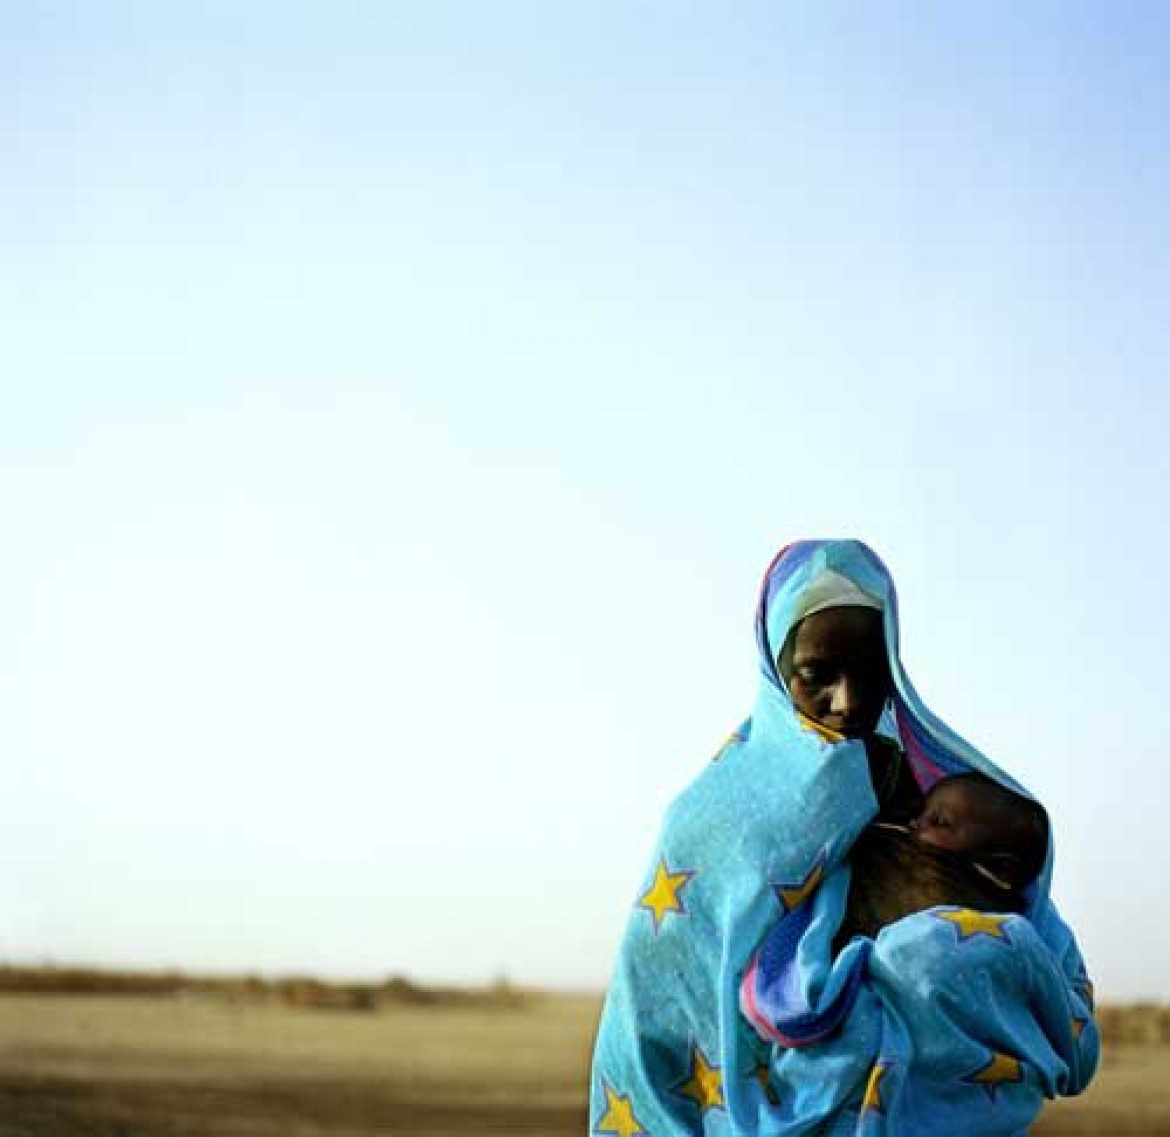 1. nagroda "Portrety - reportaż" Adam Nadel, USA, Polaris Images. "Portrety z Darfuru"